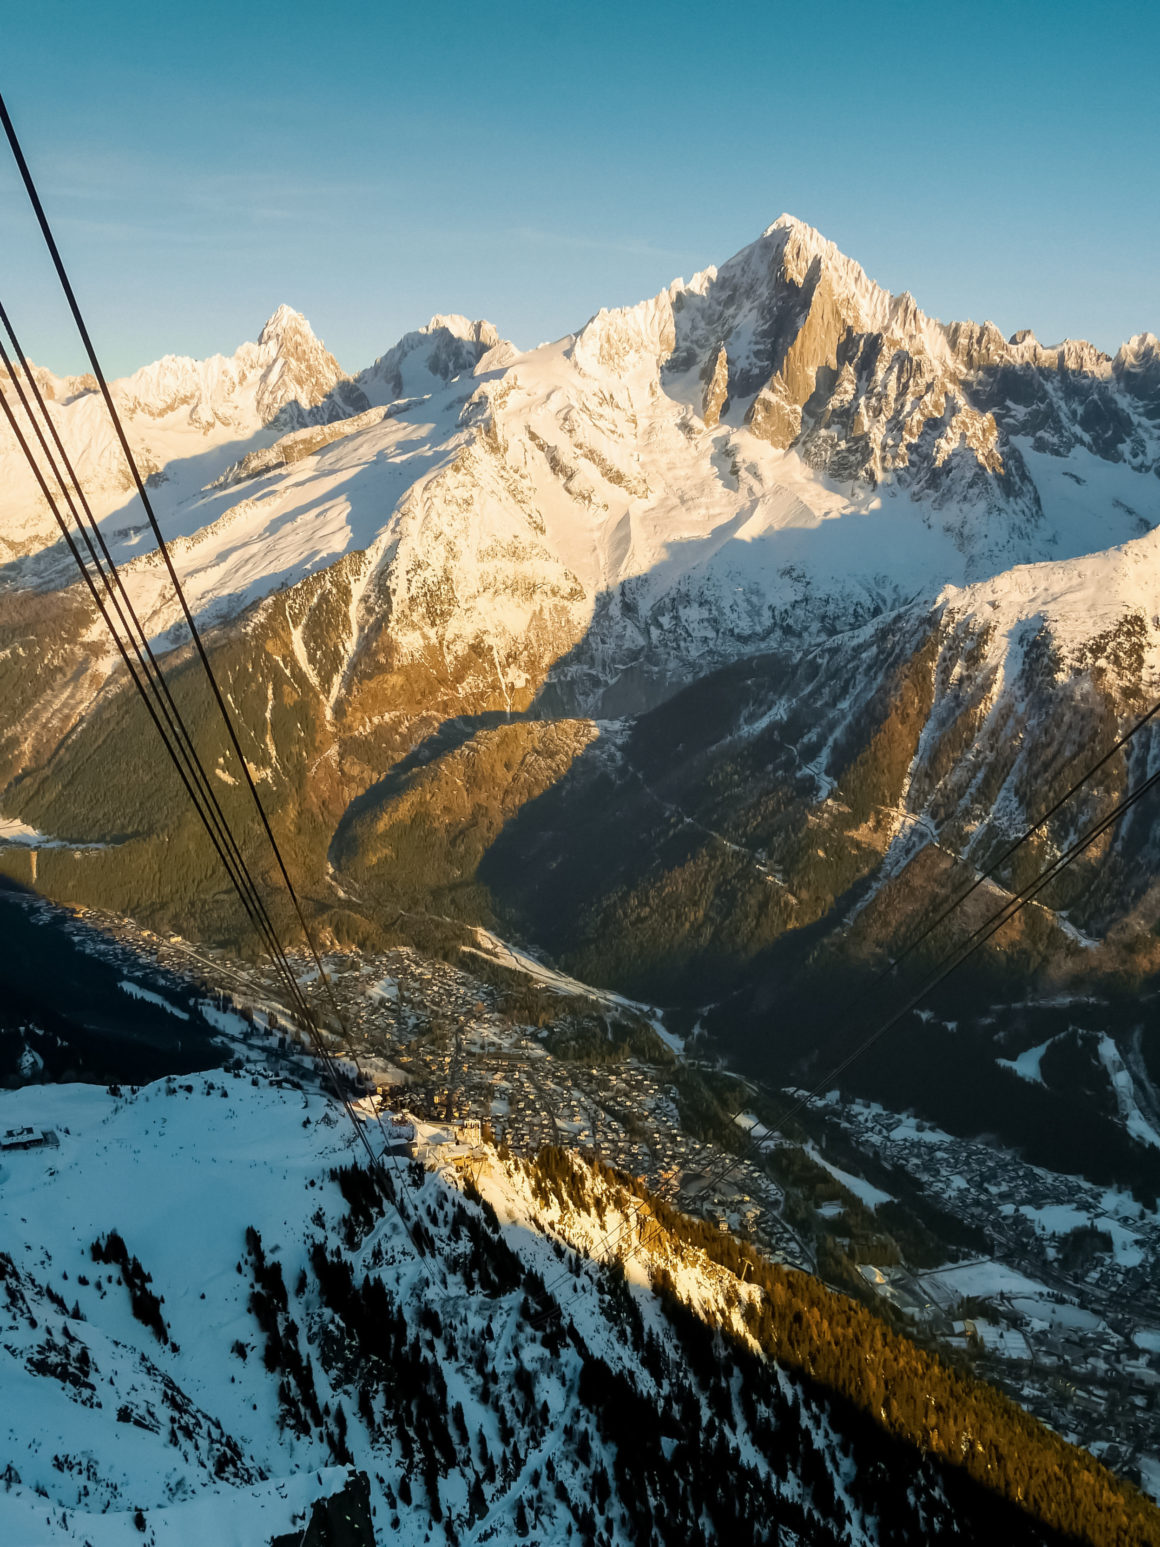 The Brévent, Chamonix, France © Claire Blumenfeld